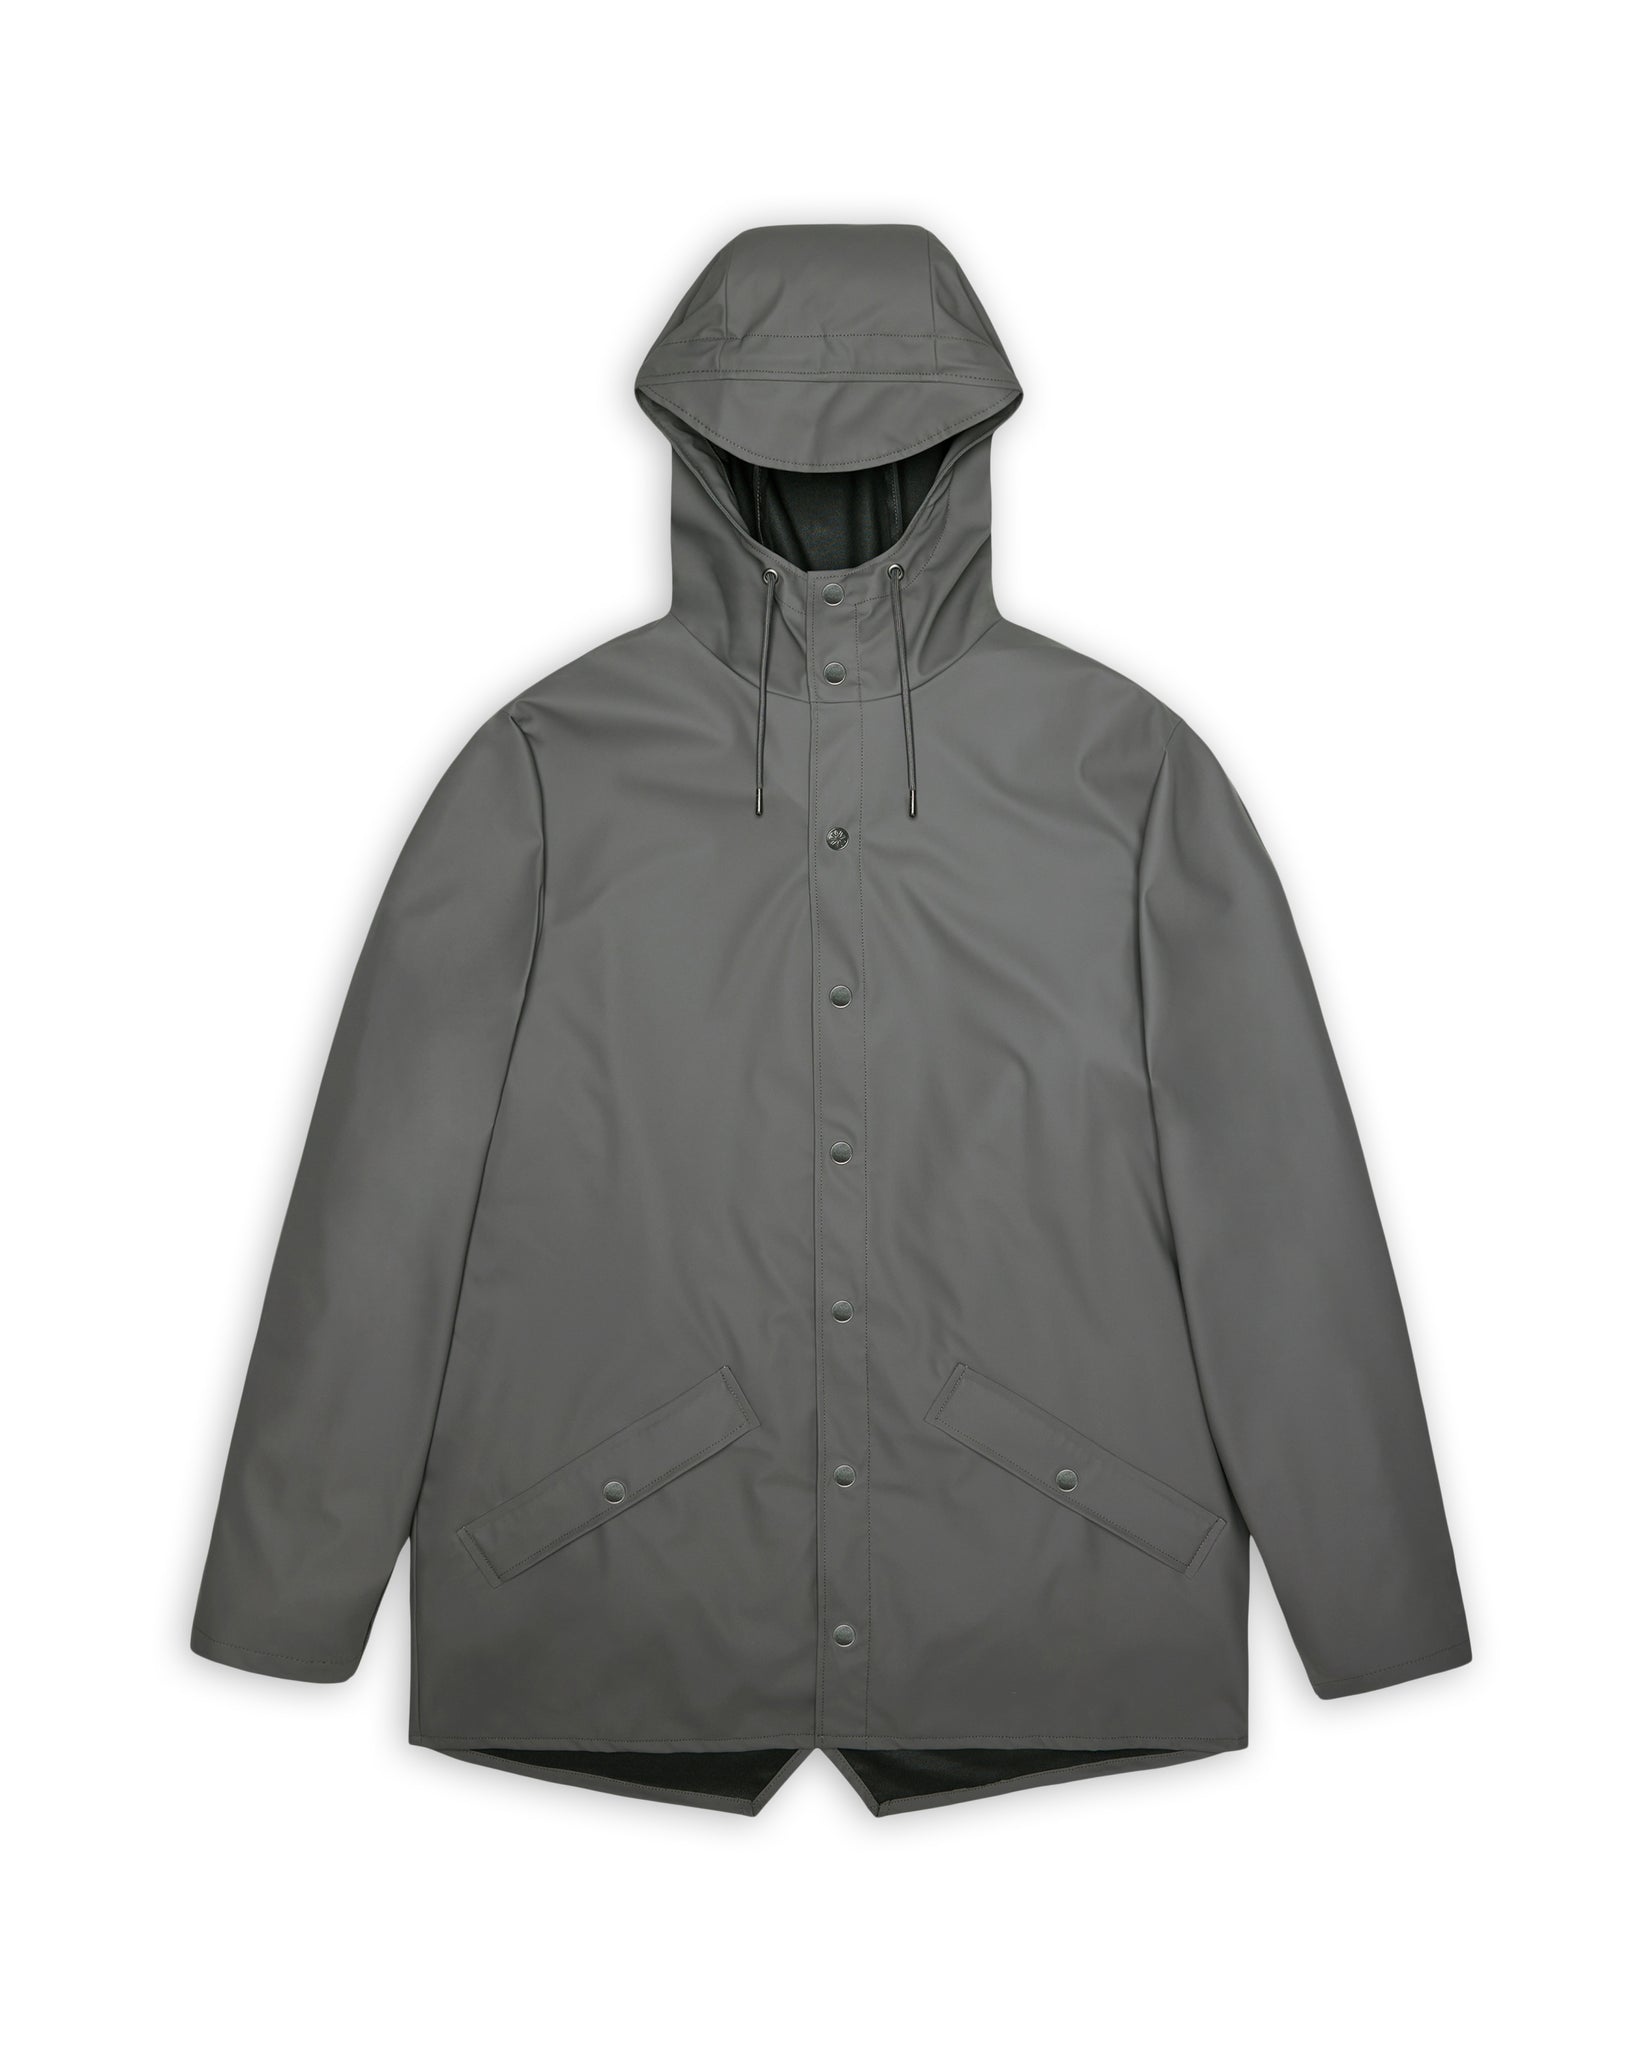 Chubasquer Jacket - Grey (Unisex)